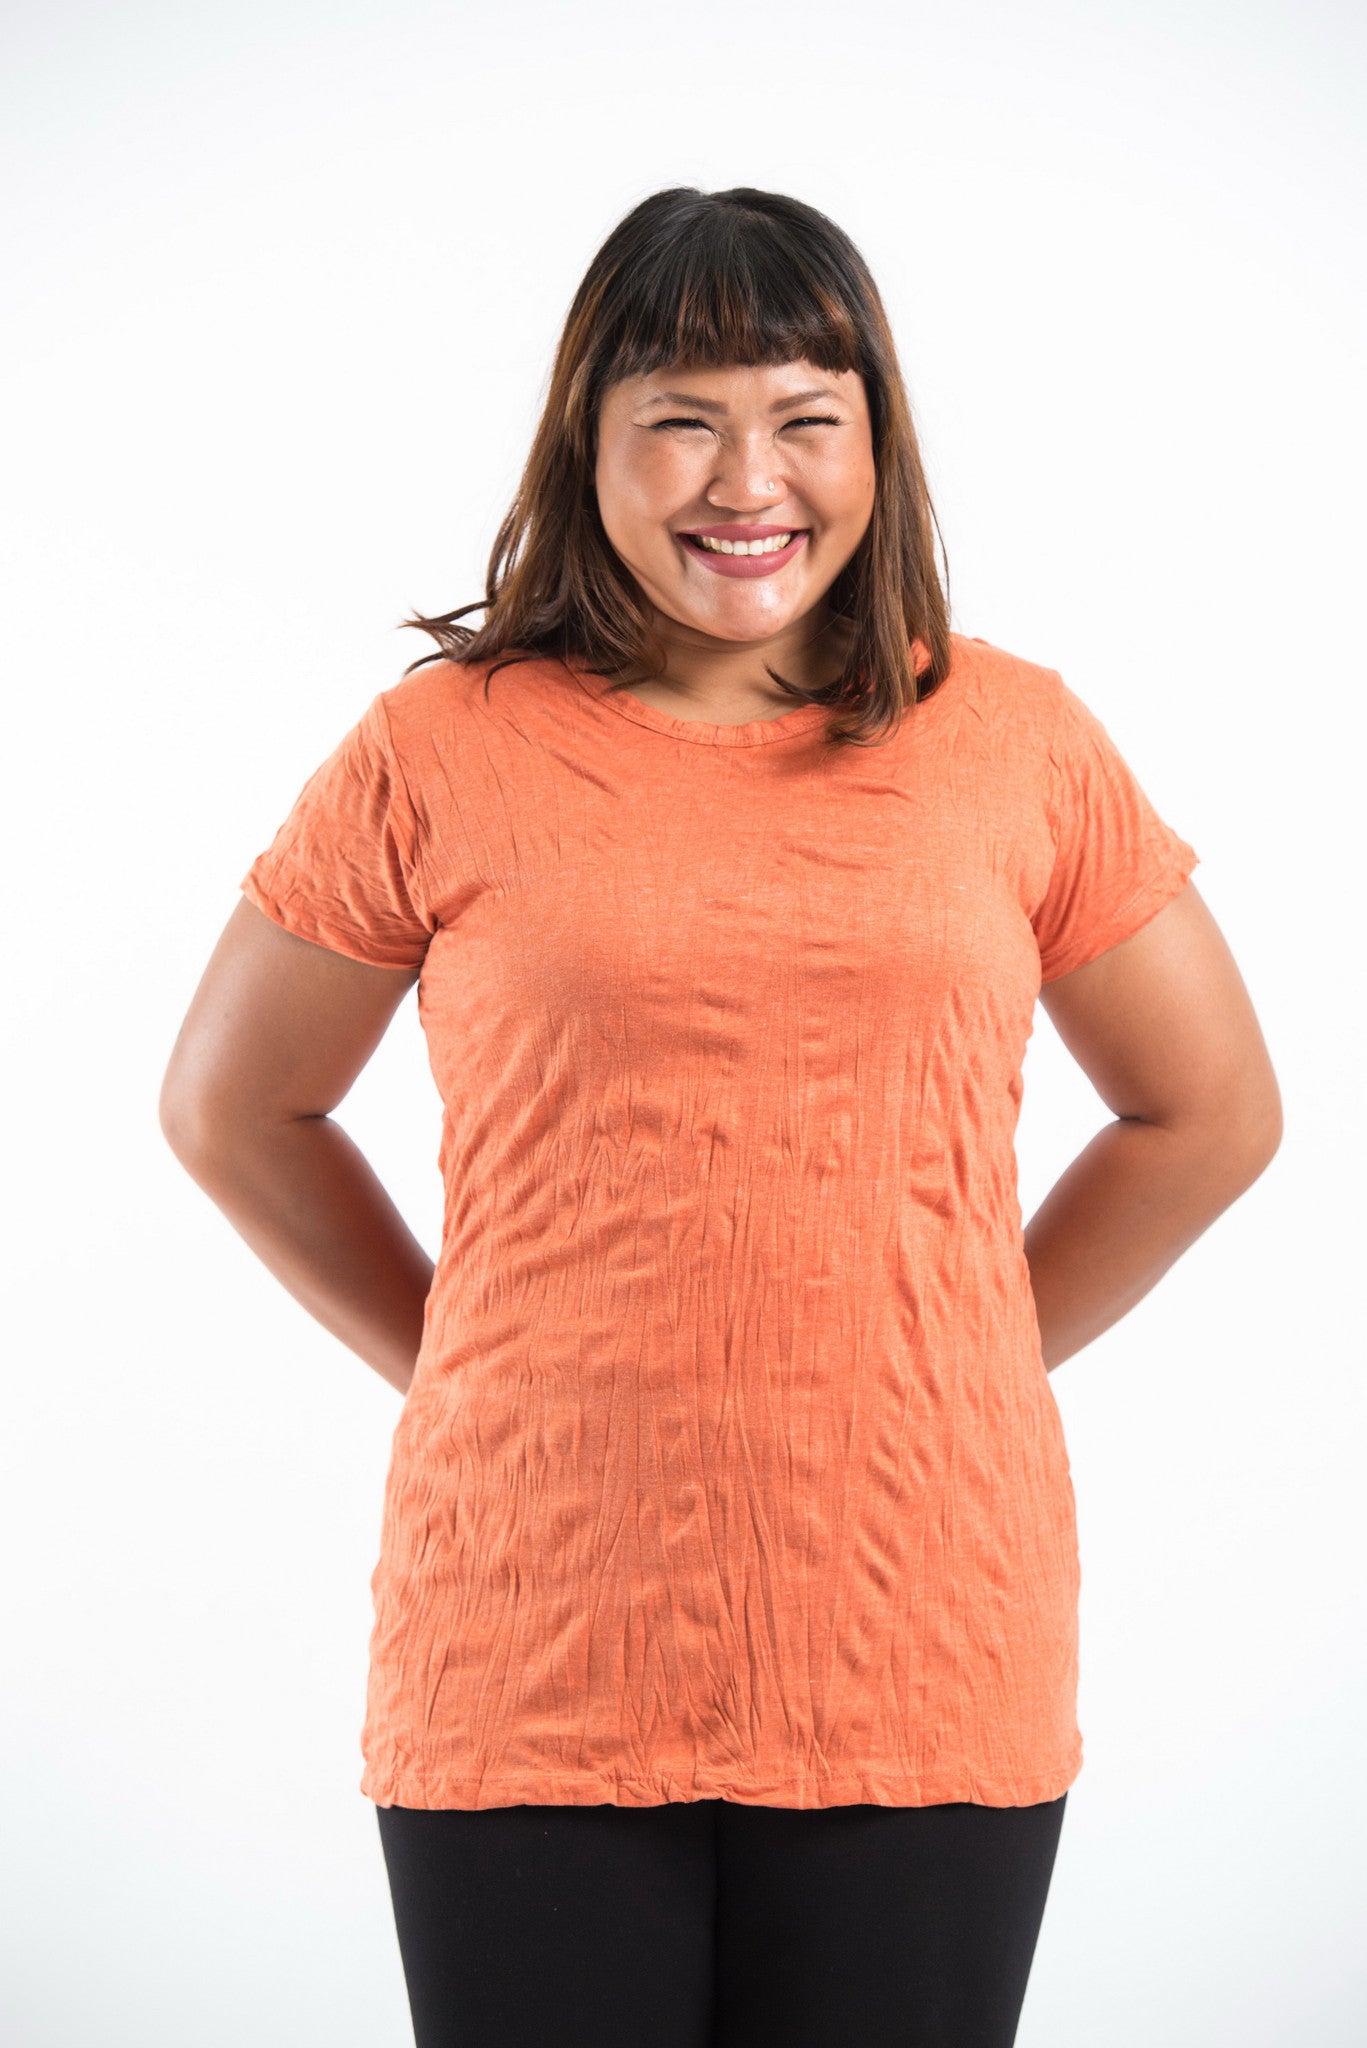 Plus Size Sure Design Women's Blank T-Shirt Orange – Sure Design Wholesale